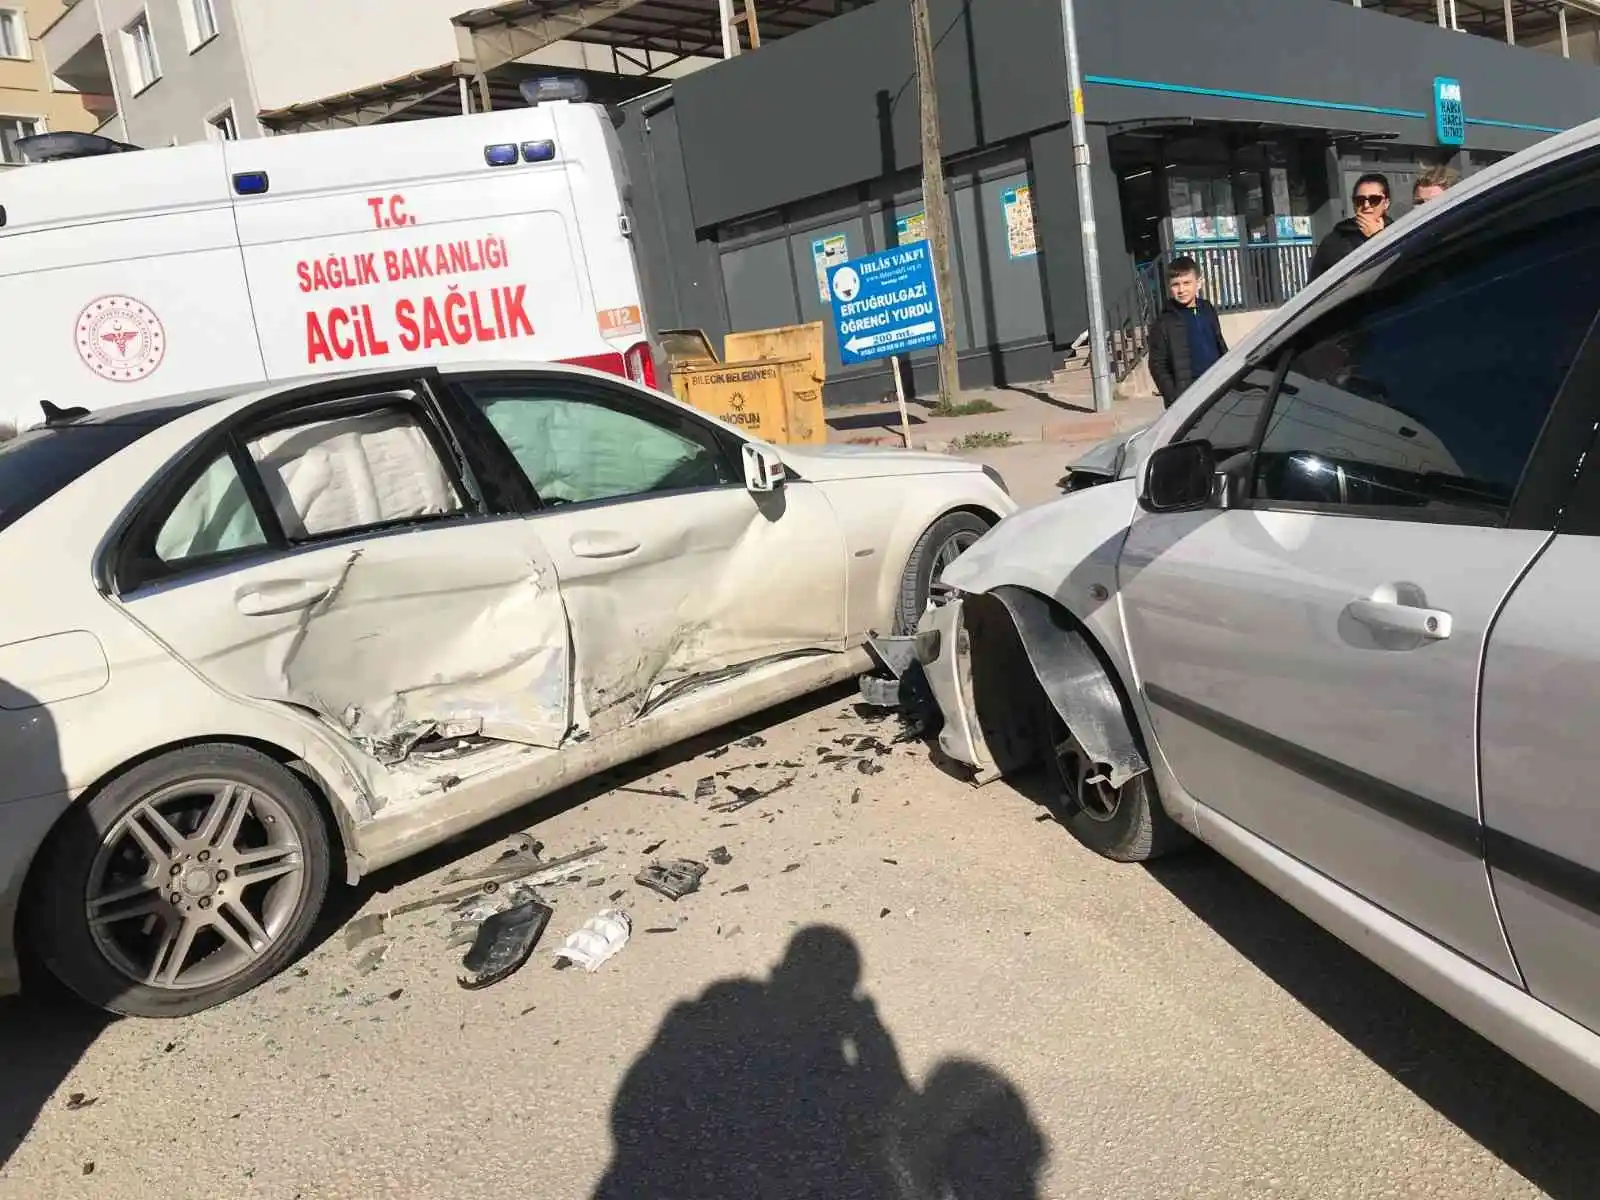 Bilecik'te yaşanan trafik kazasında 3 kişi yaralandı
